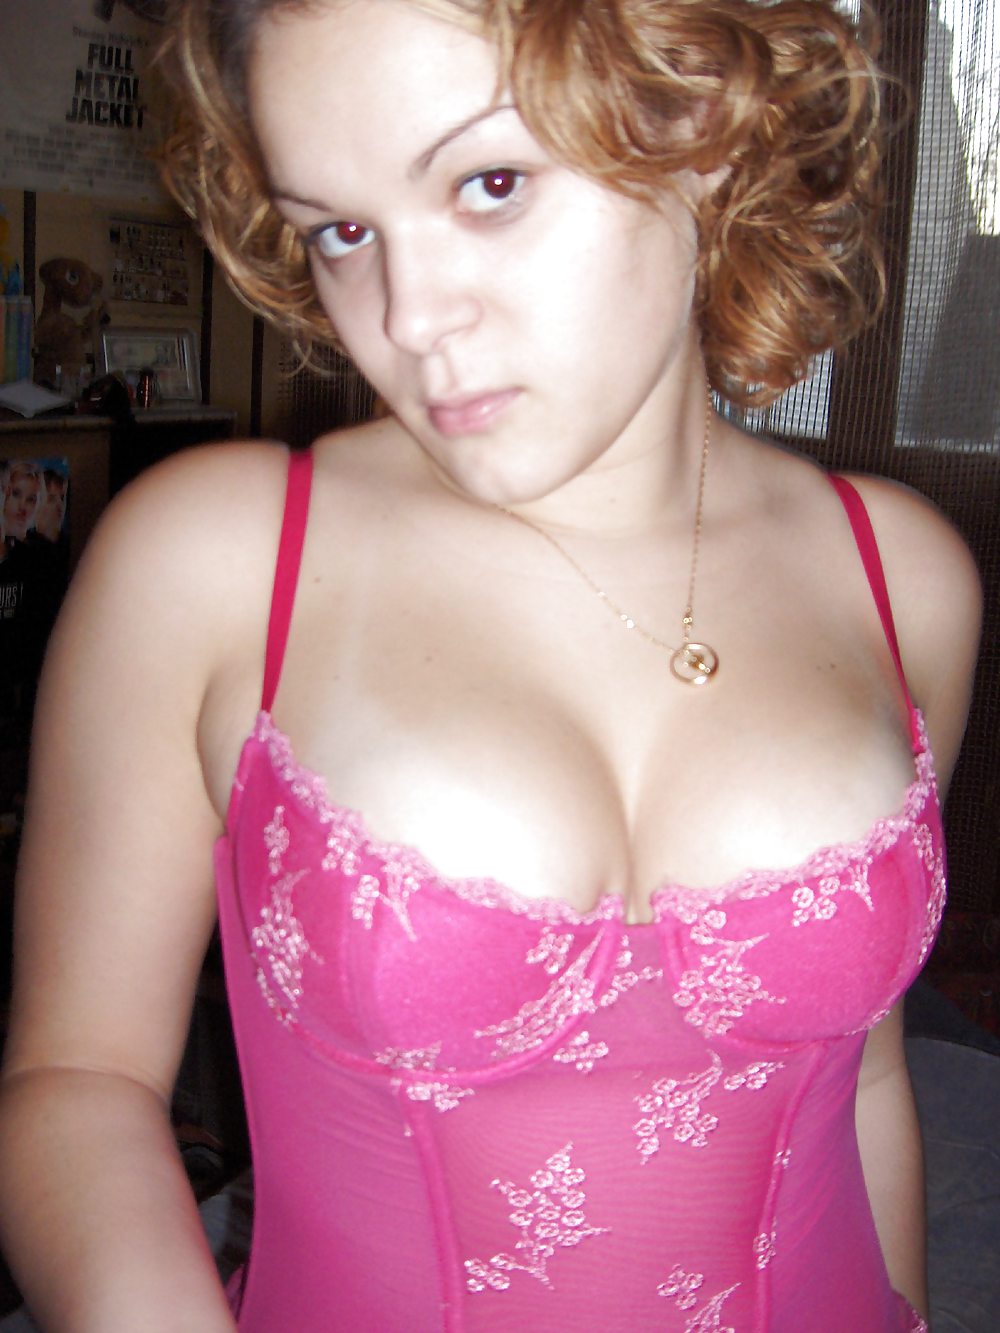 Redhead teen loves pink - N. C. porn gallery